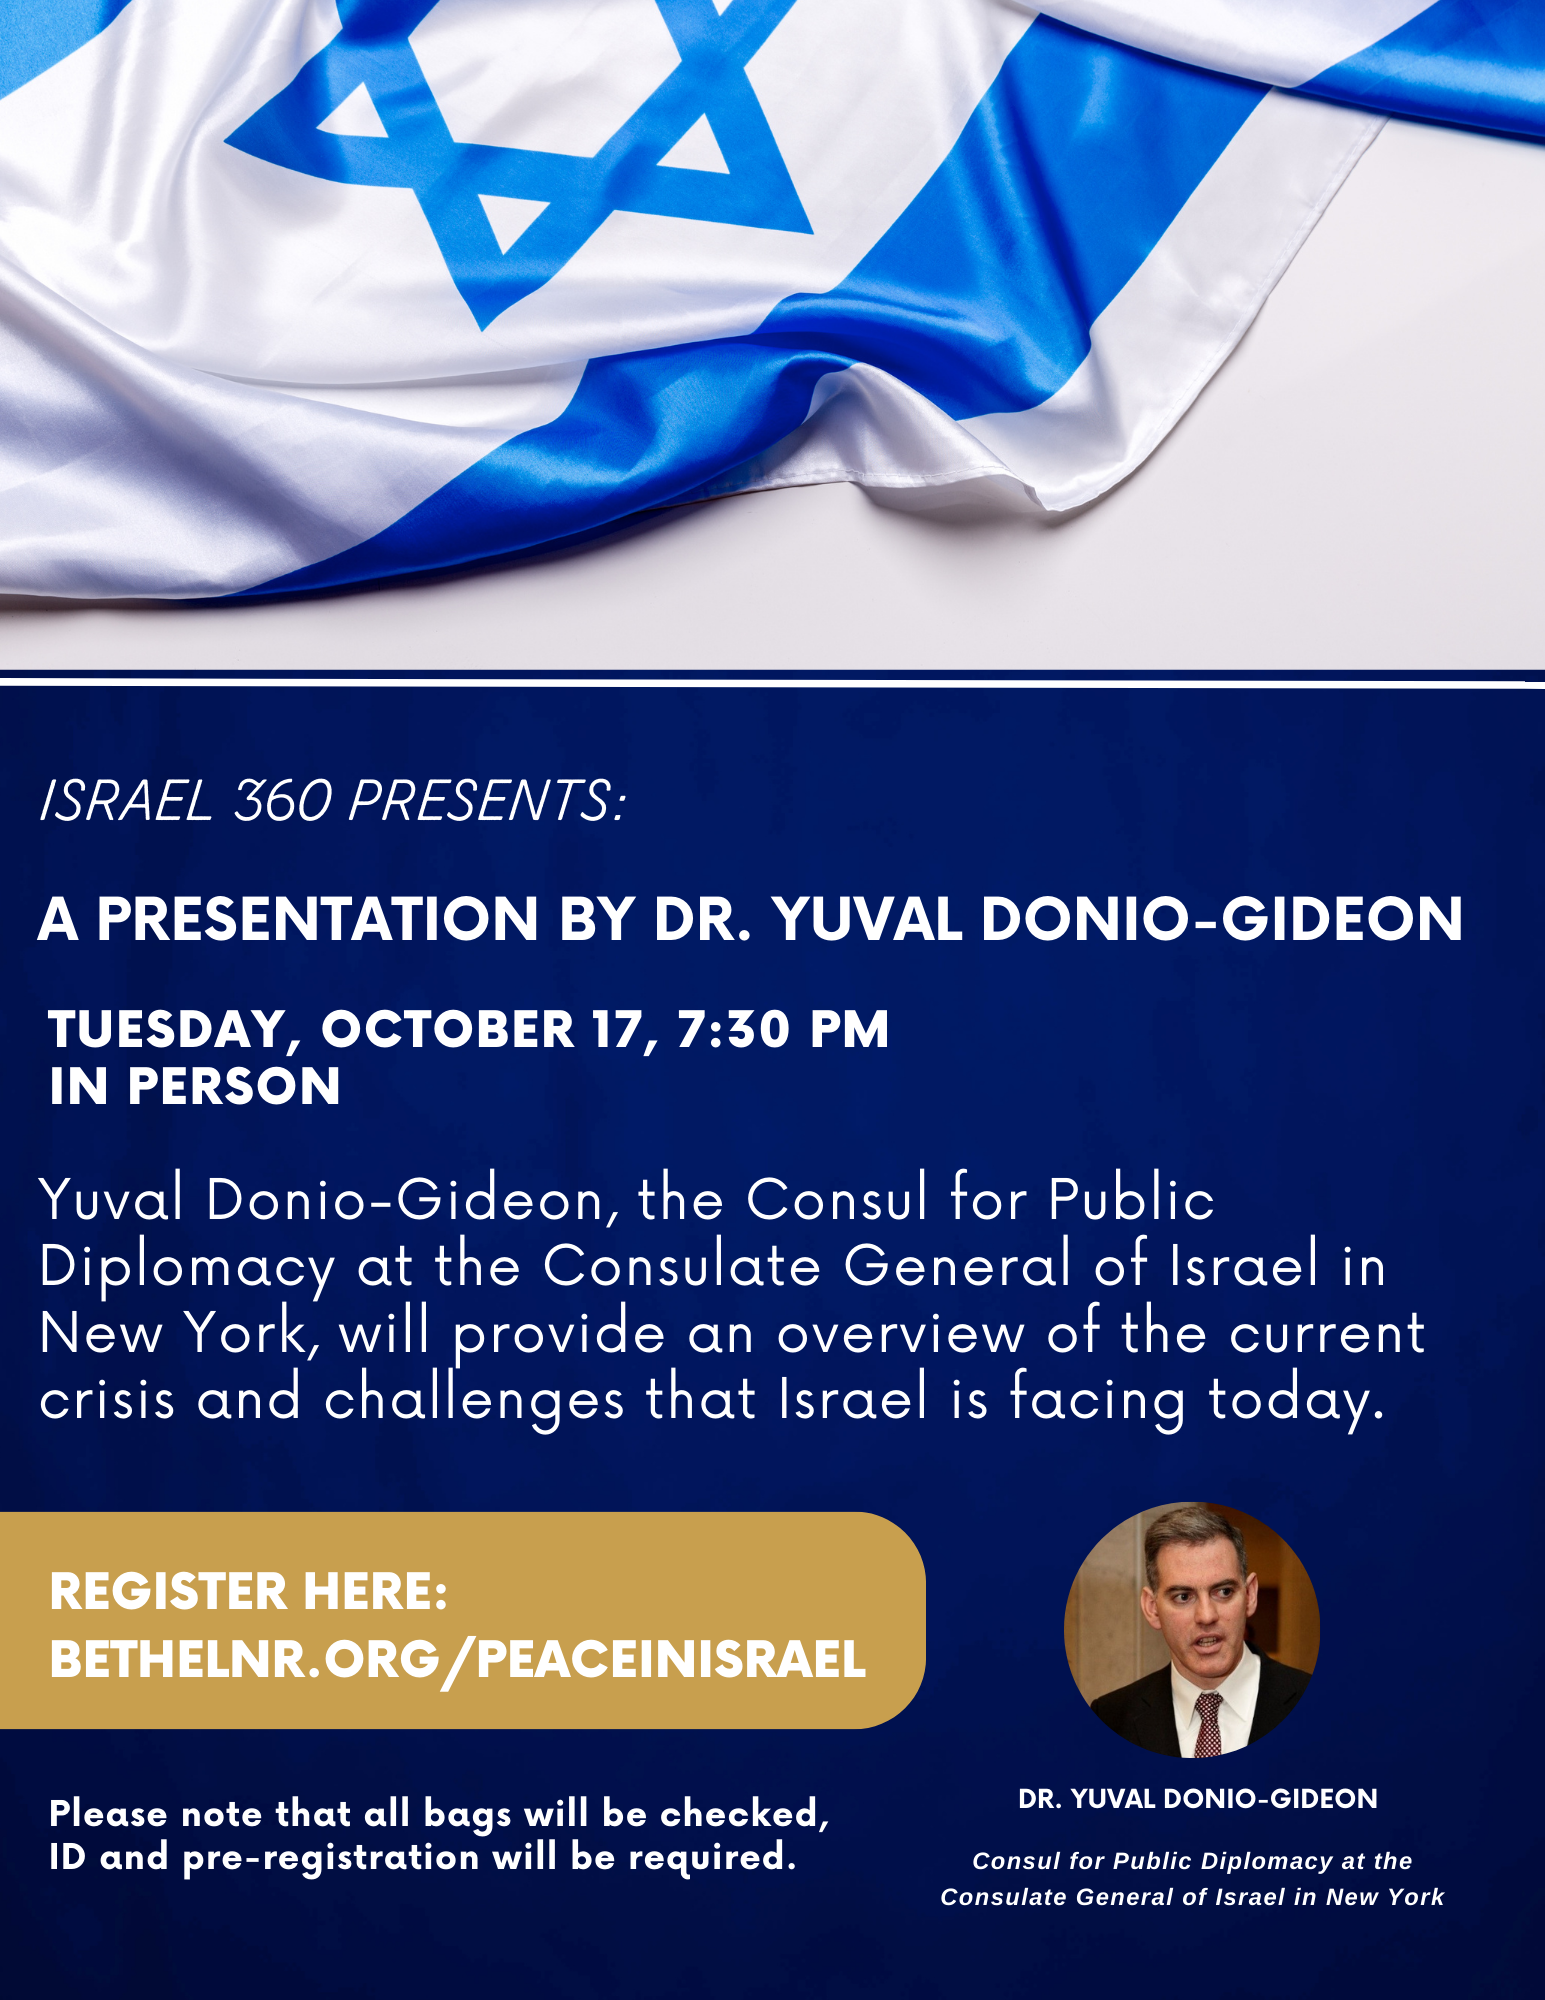 Beth El Synagogue - A Presentation by Yuval Donio-Gideon